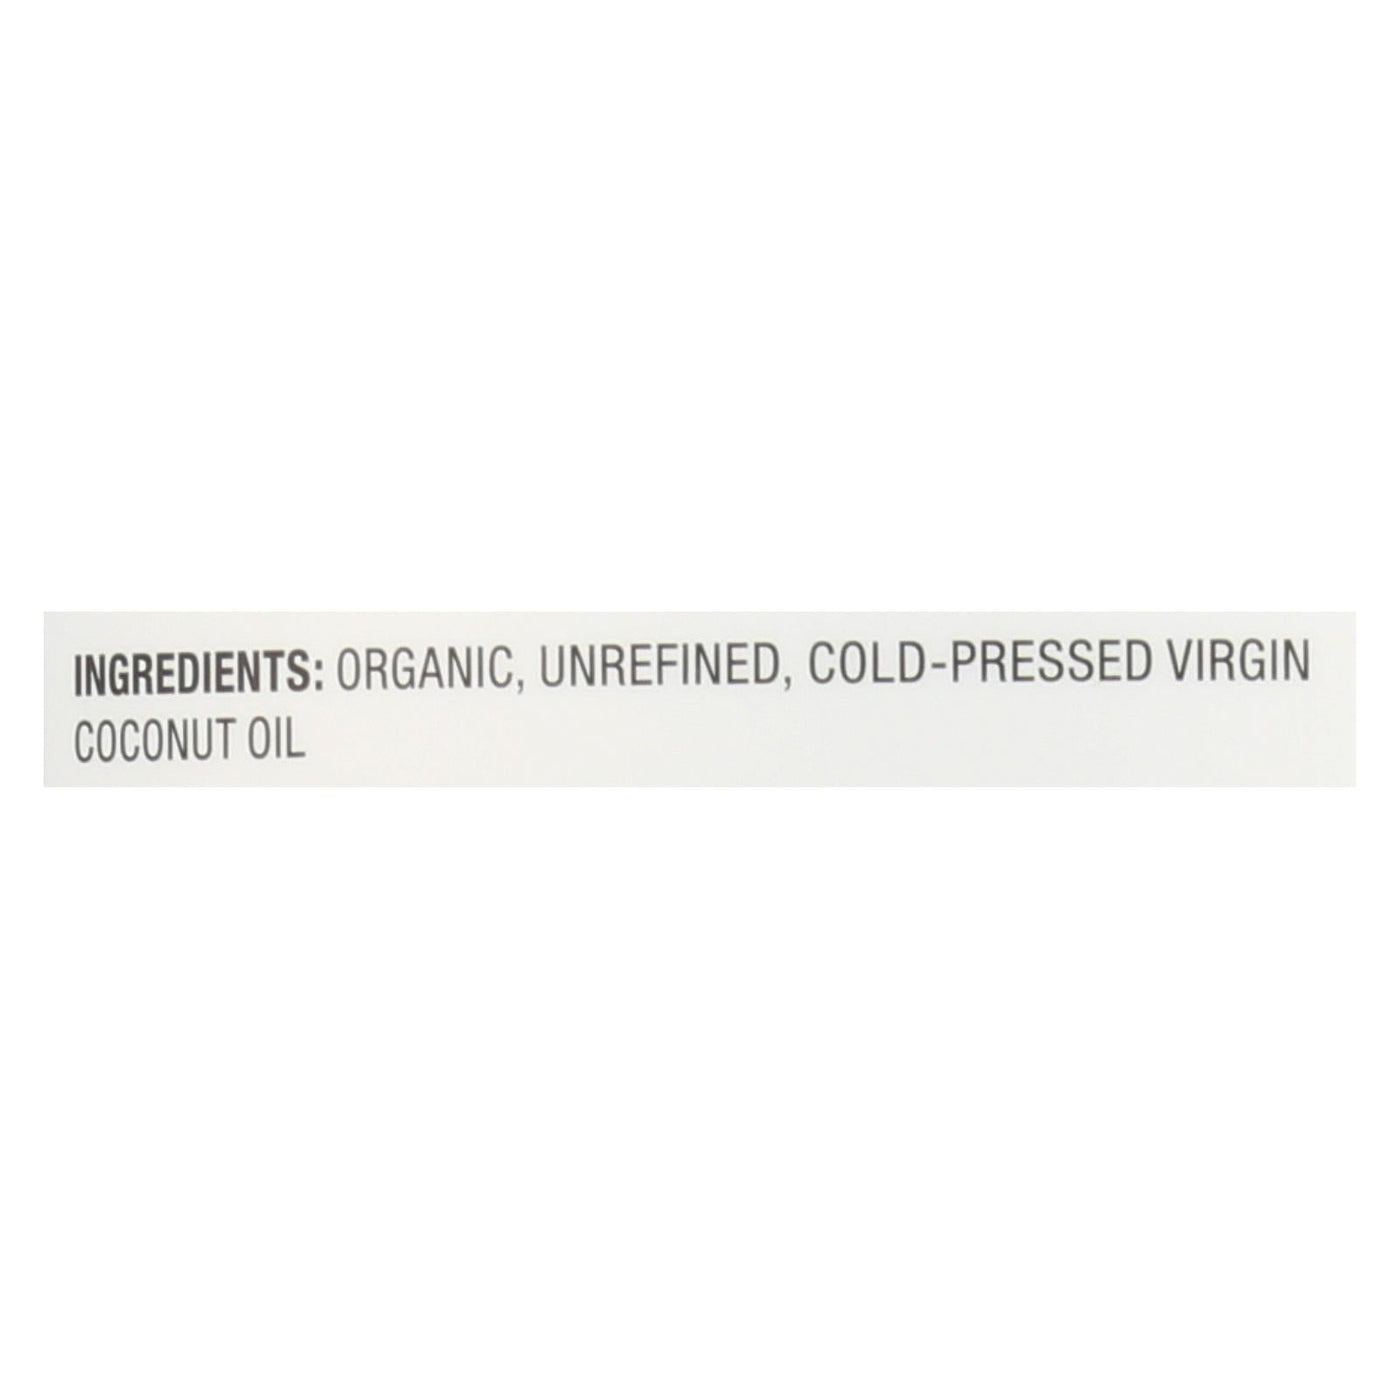 Nutiva Virgin Coconut Oil Organic - 54 Fl Oz | OnlyNaturals.us